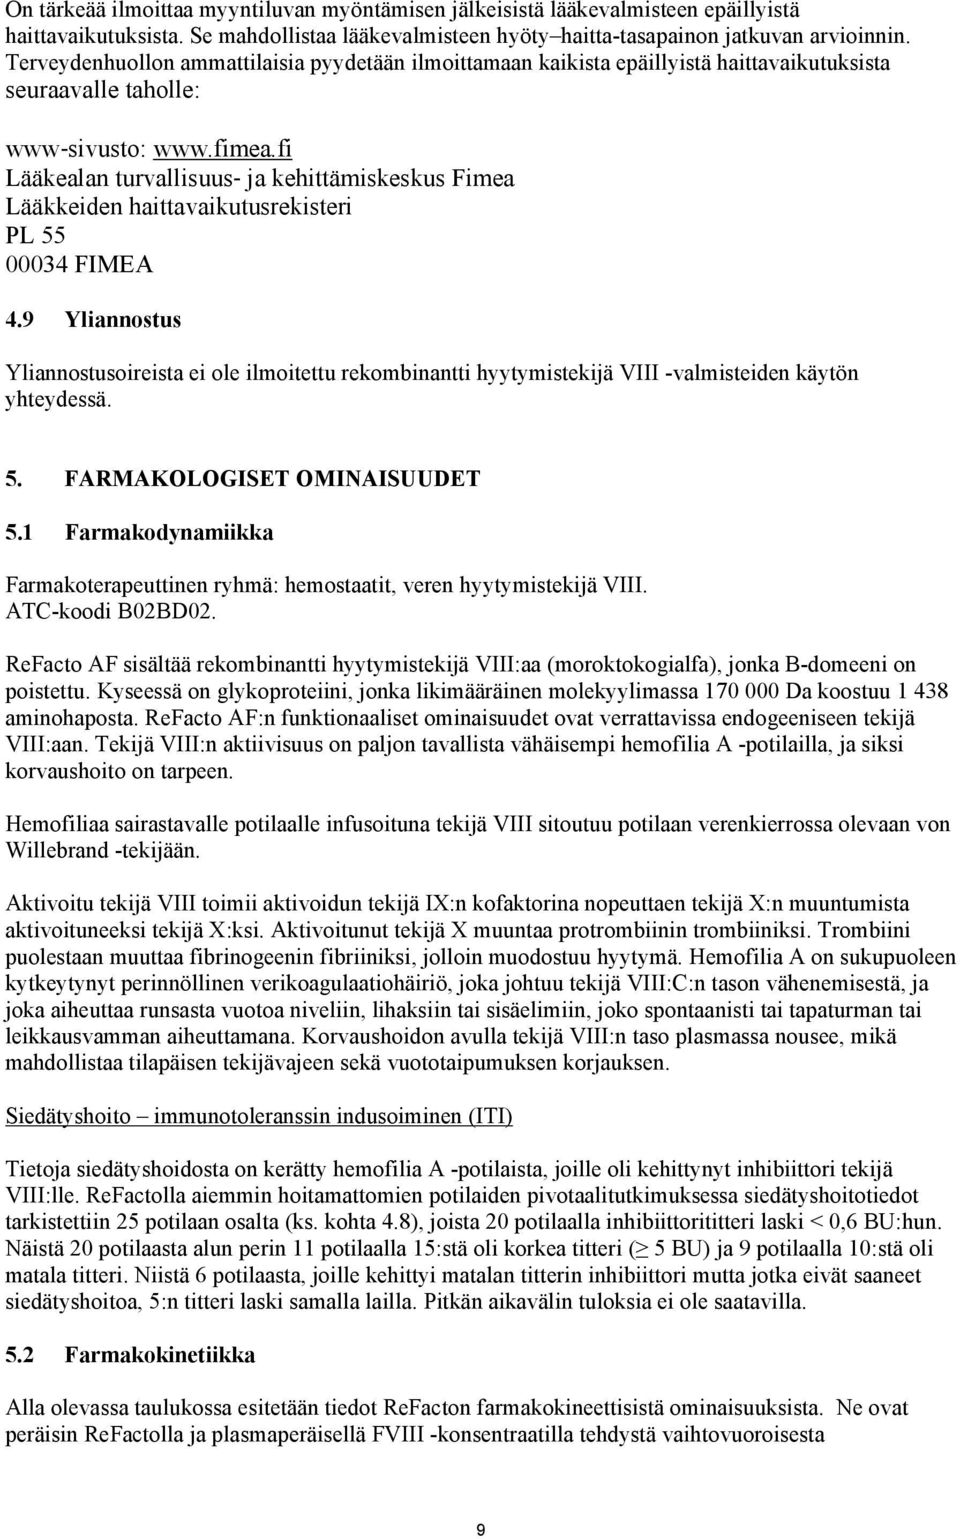 fi Lääkealan turvallisuus ja kehittämiskeskus Fimea Lääkkeiden haittavaikutusrekisteri PL 55 00034 FIMEA 4.